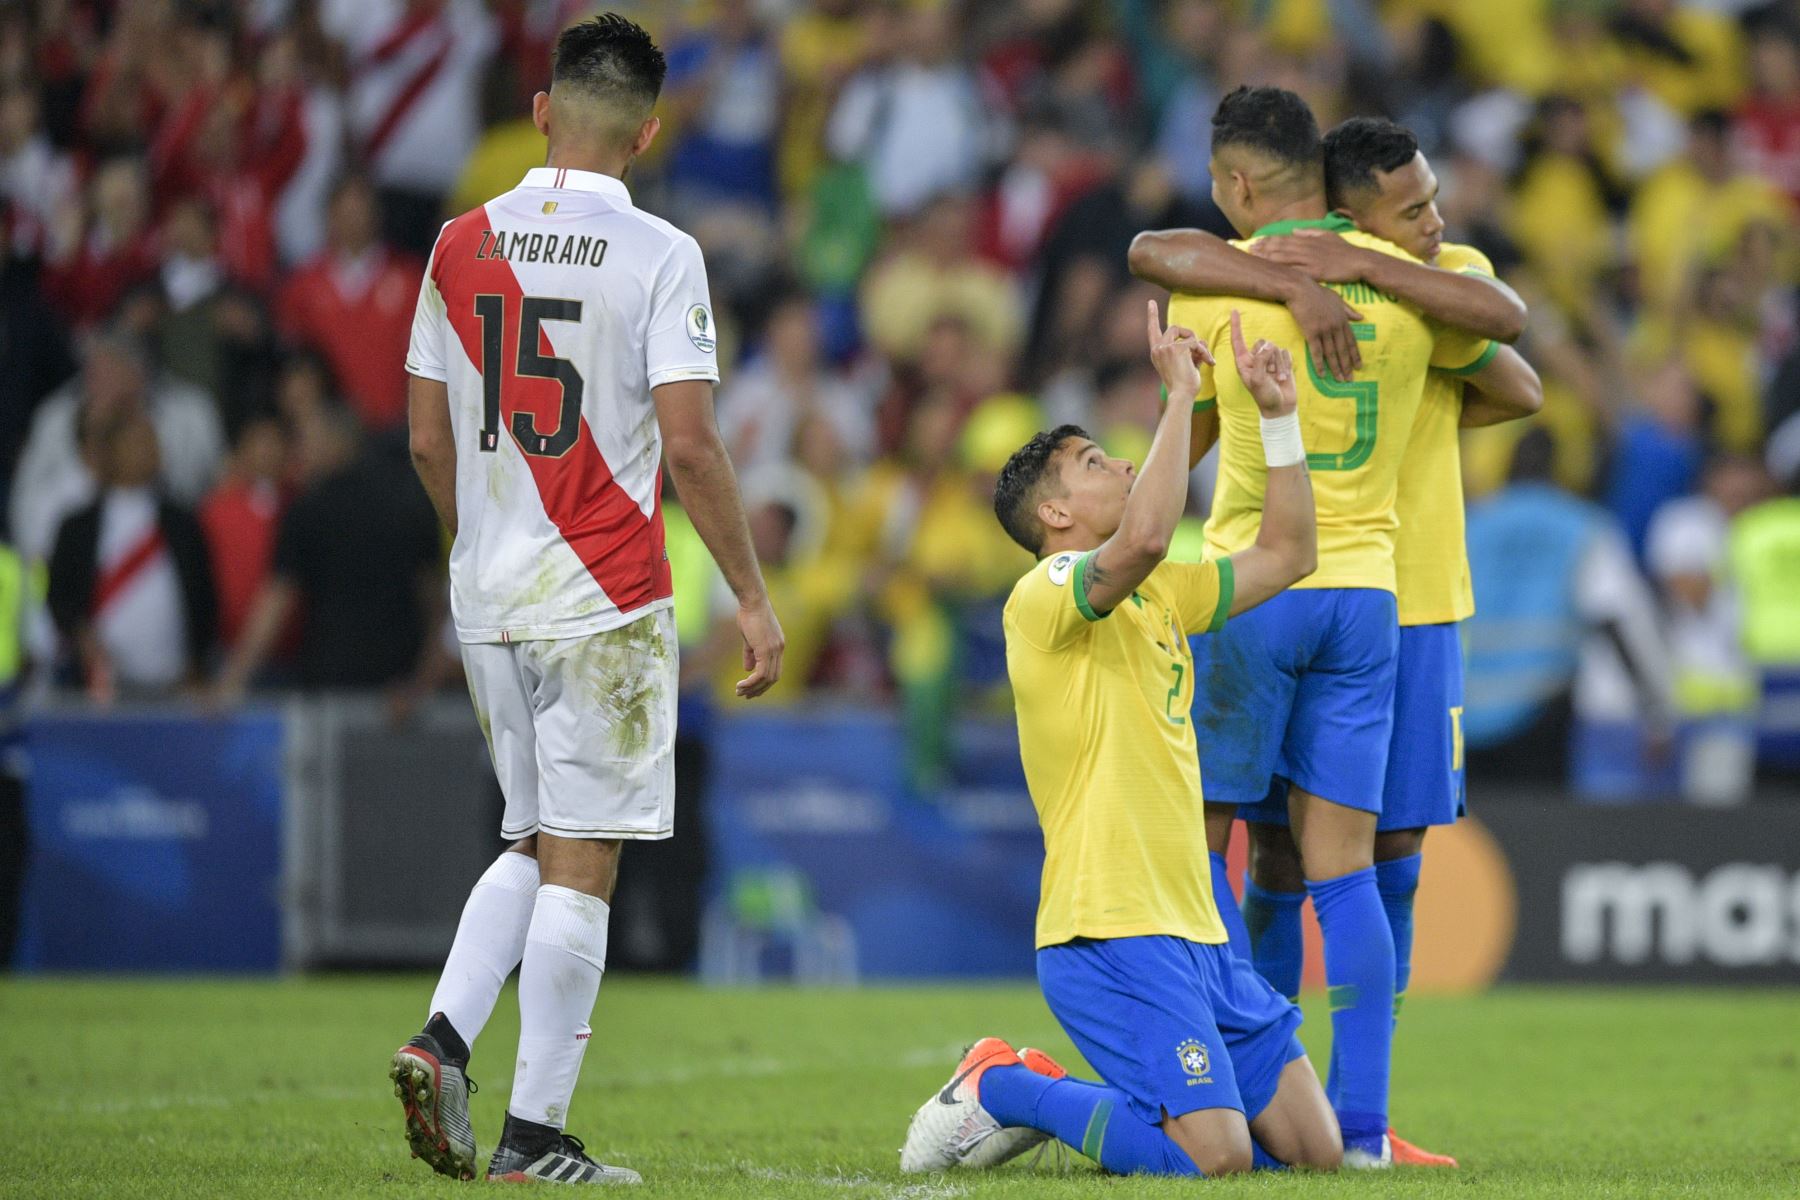 Los jugadores de Brasil celebran después de derrotar a Perú durante el partido final del torneo de fútbol de Copa América en el Estadio Maracaná de Río de Janeiro, Brasil.
Foto: AFP